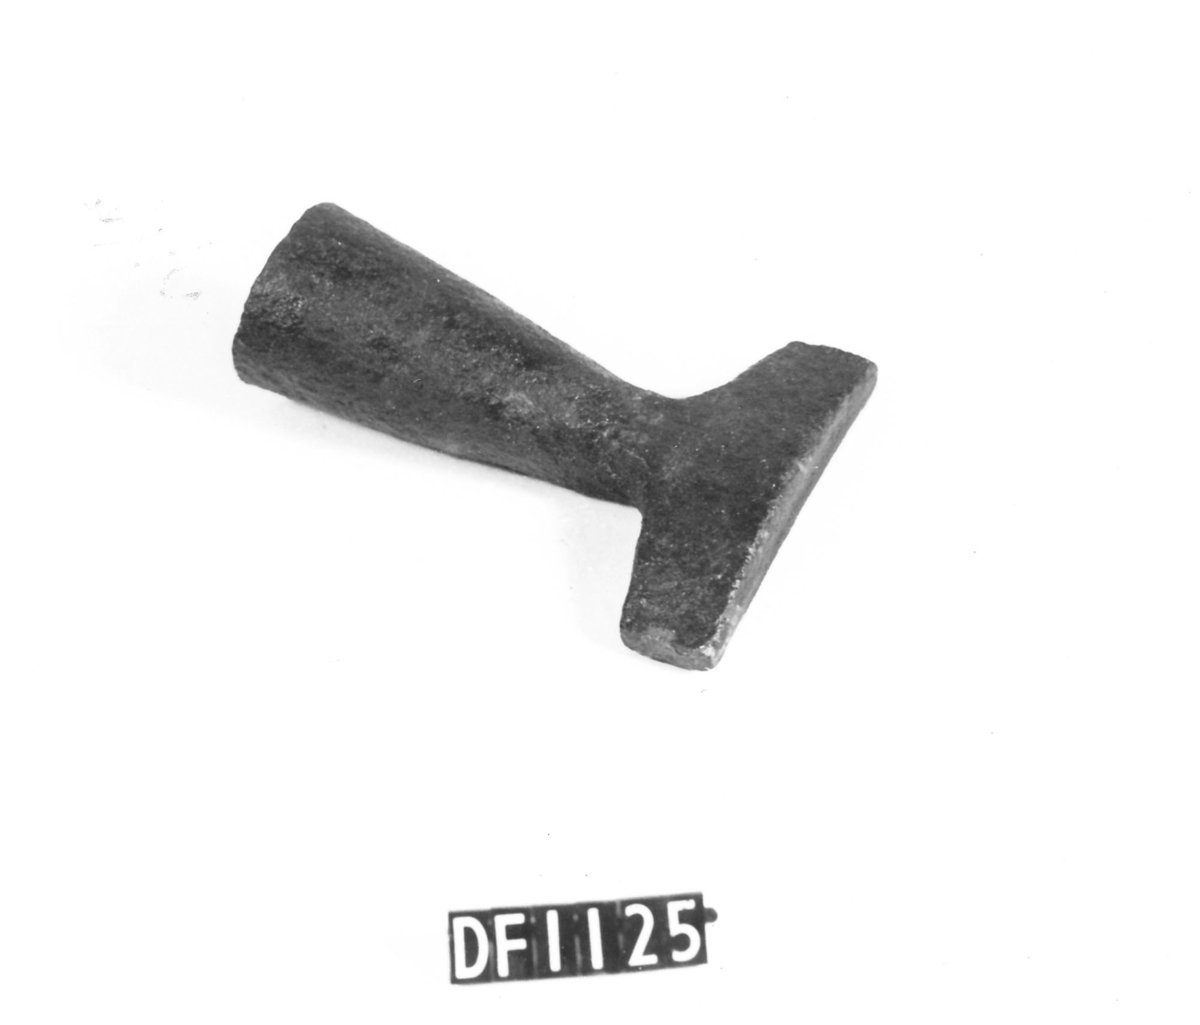 Drivholt ble brukt til å drive tønneband ned på tønnen. Den ble holdt mot tønnebandet og slått på med diksel.